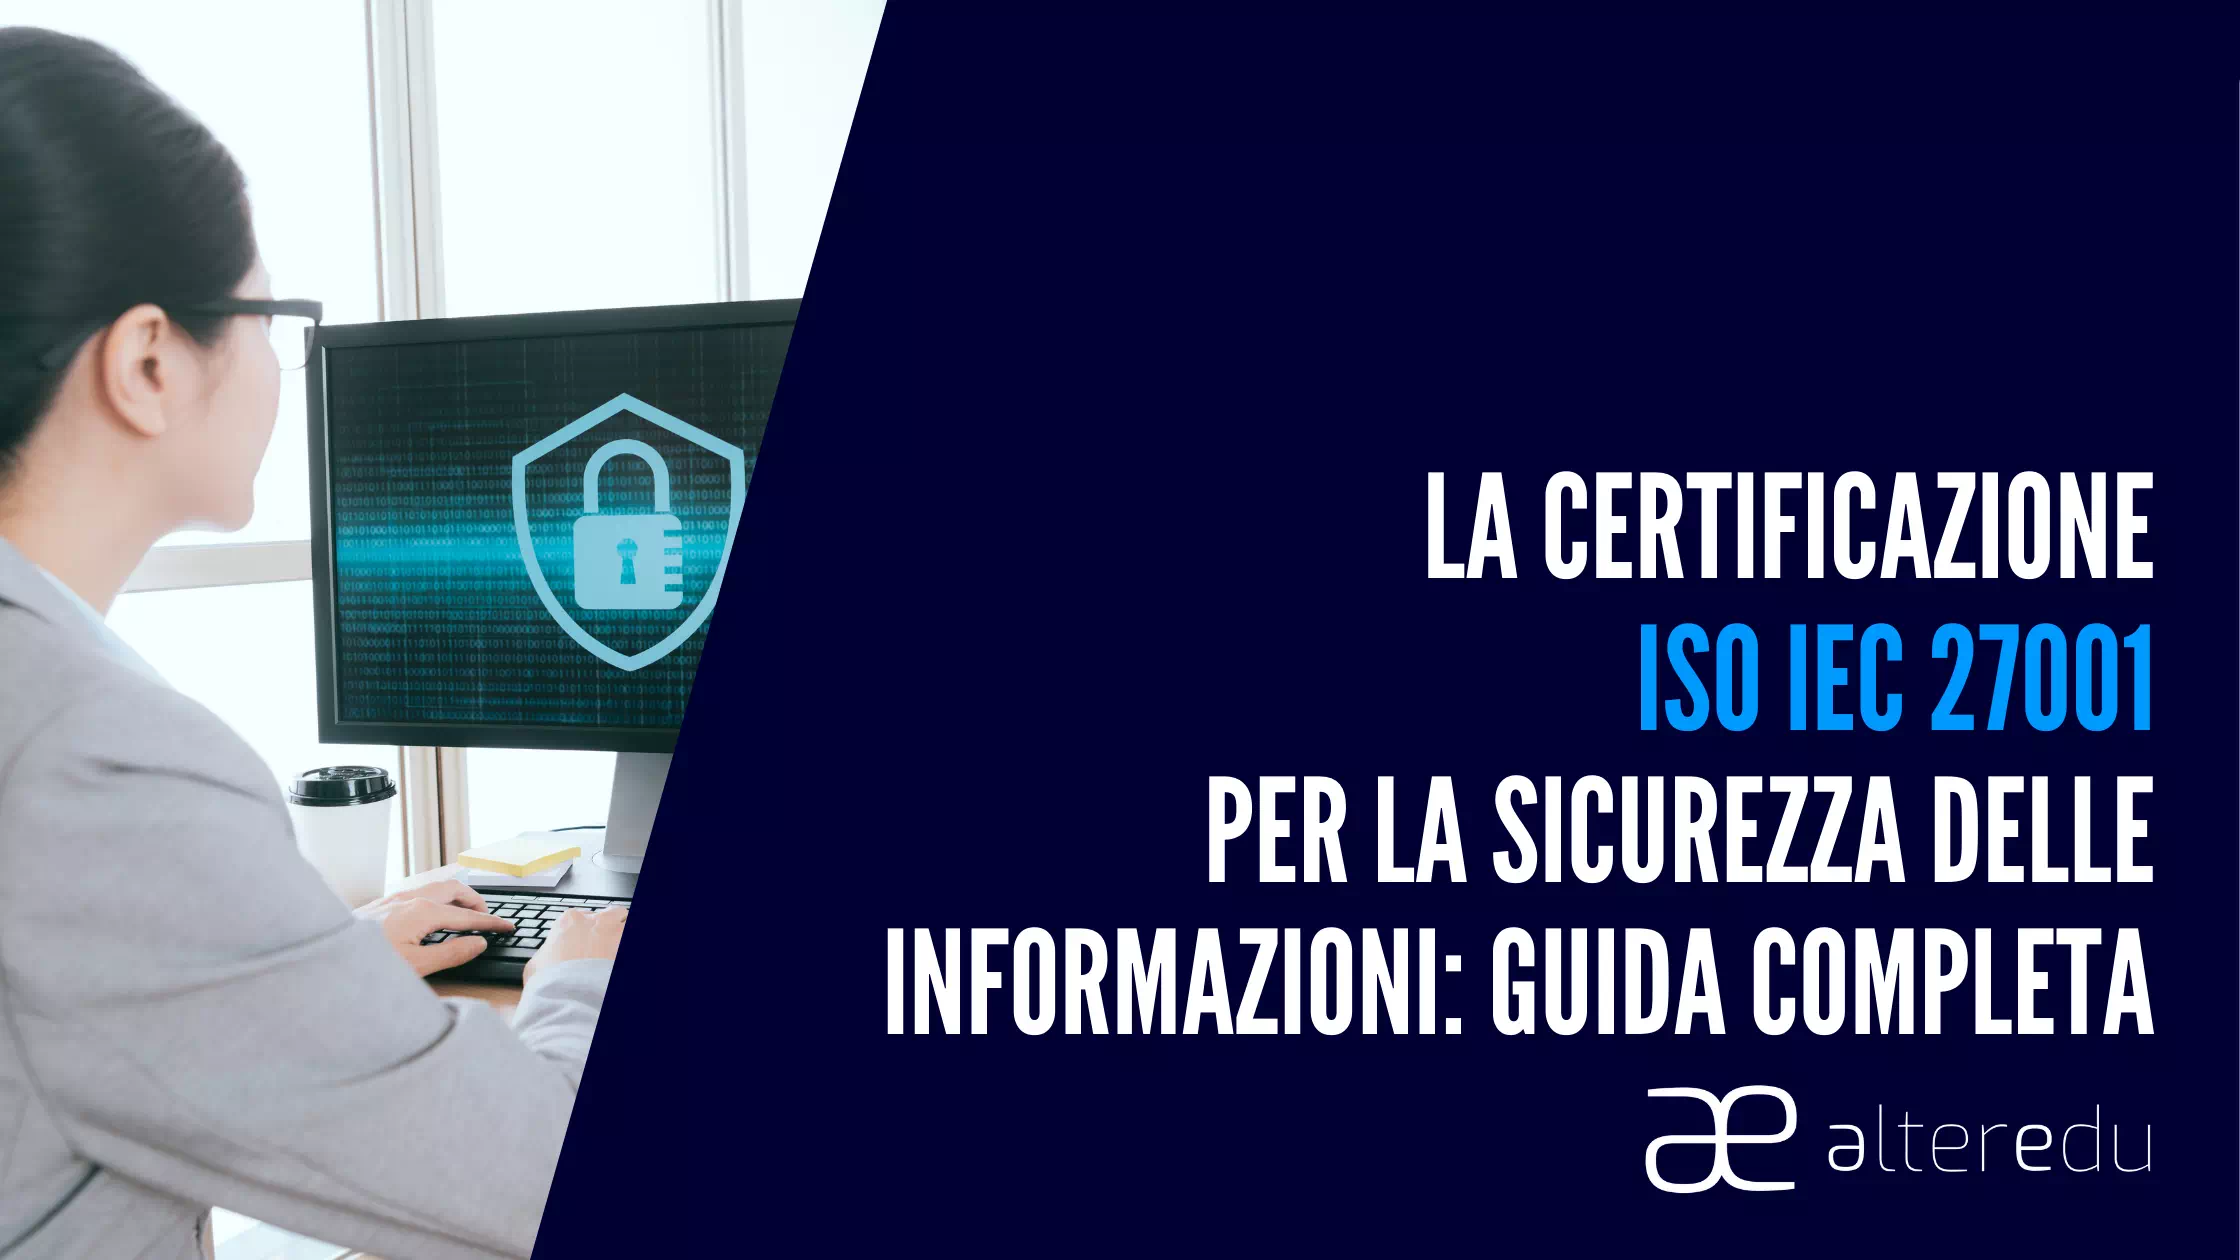  La Certificazione ISO IEC 27001 per la Sicurezza delle Informazioni: Guida Completa